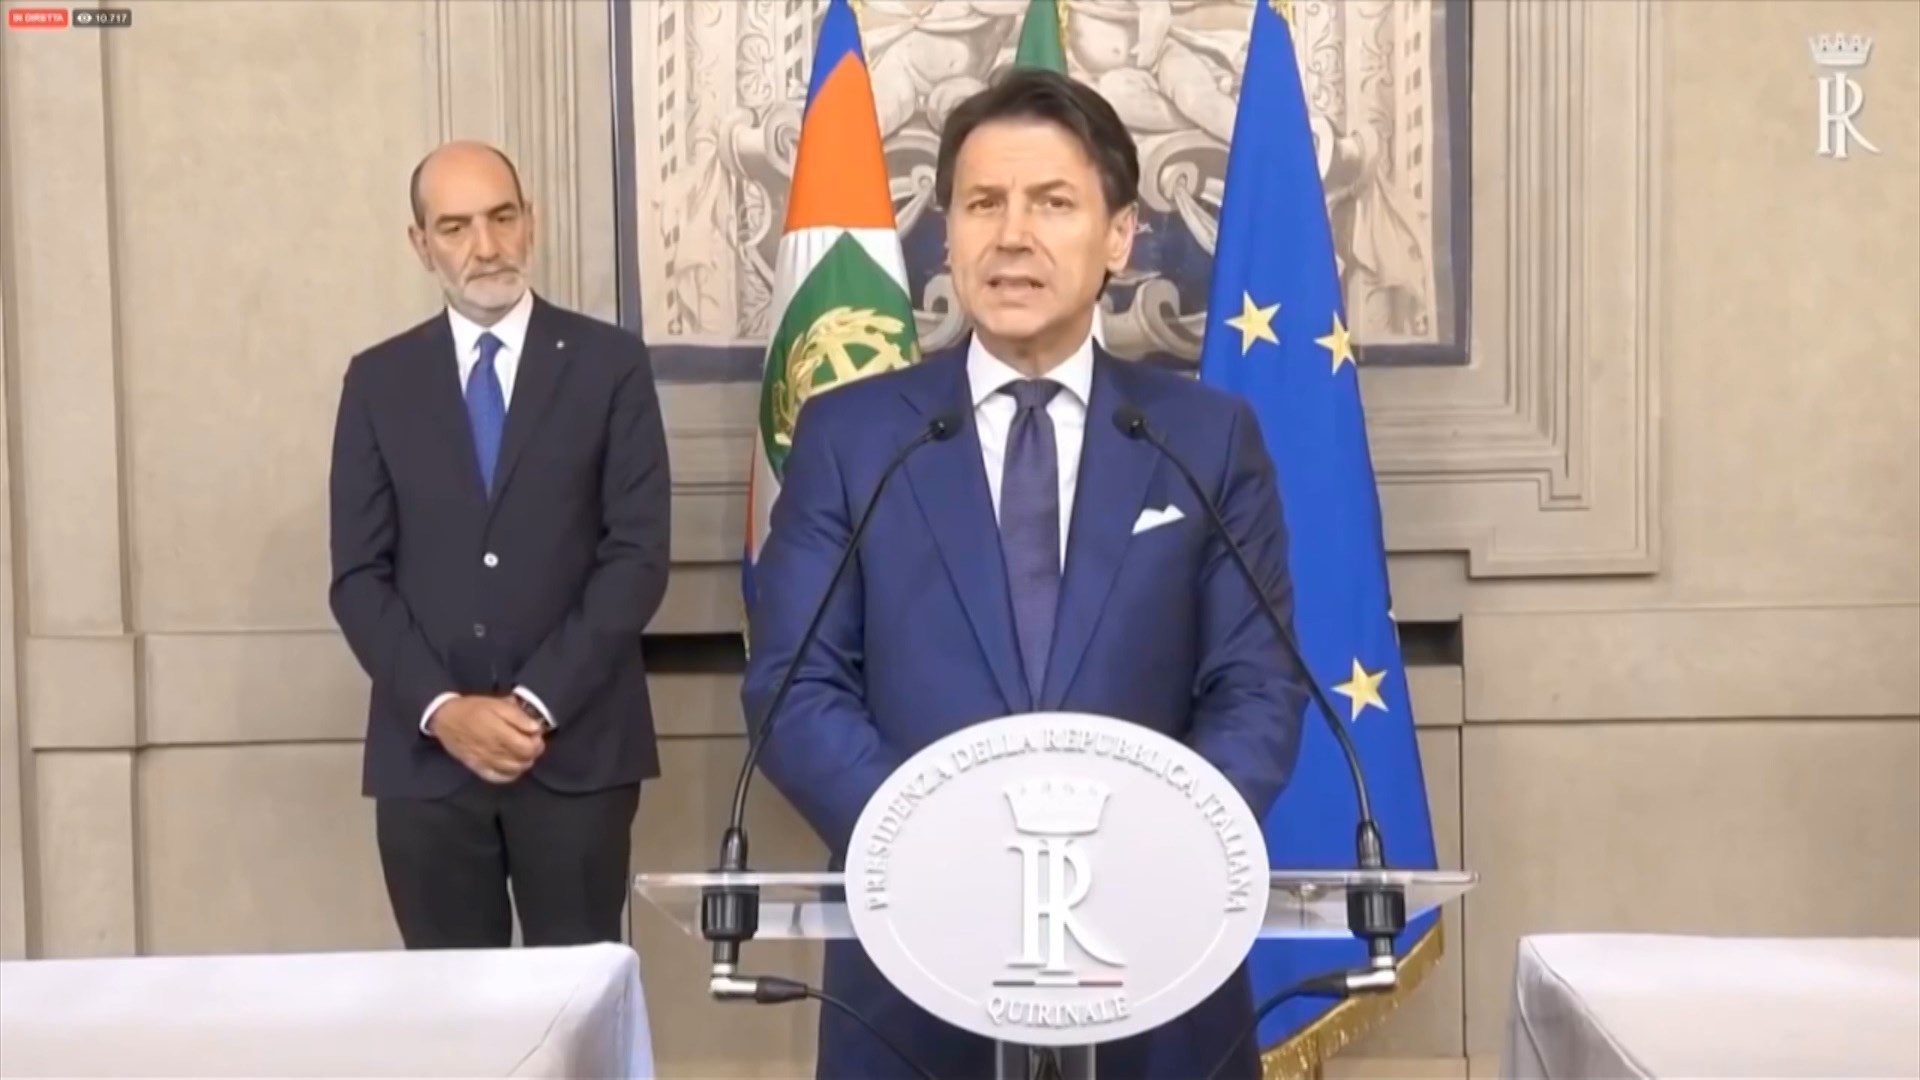 Kryeministri i Italisë viziton sot Tiranën, takim me Presidentin, Kryeministrin, kreun e PD